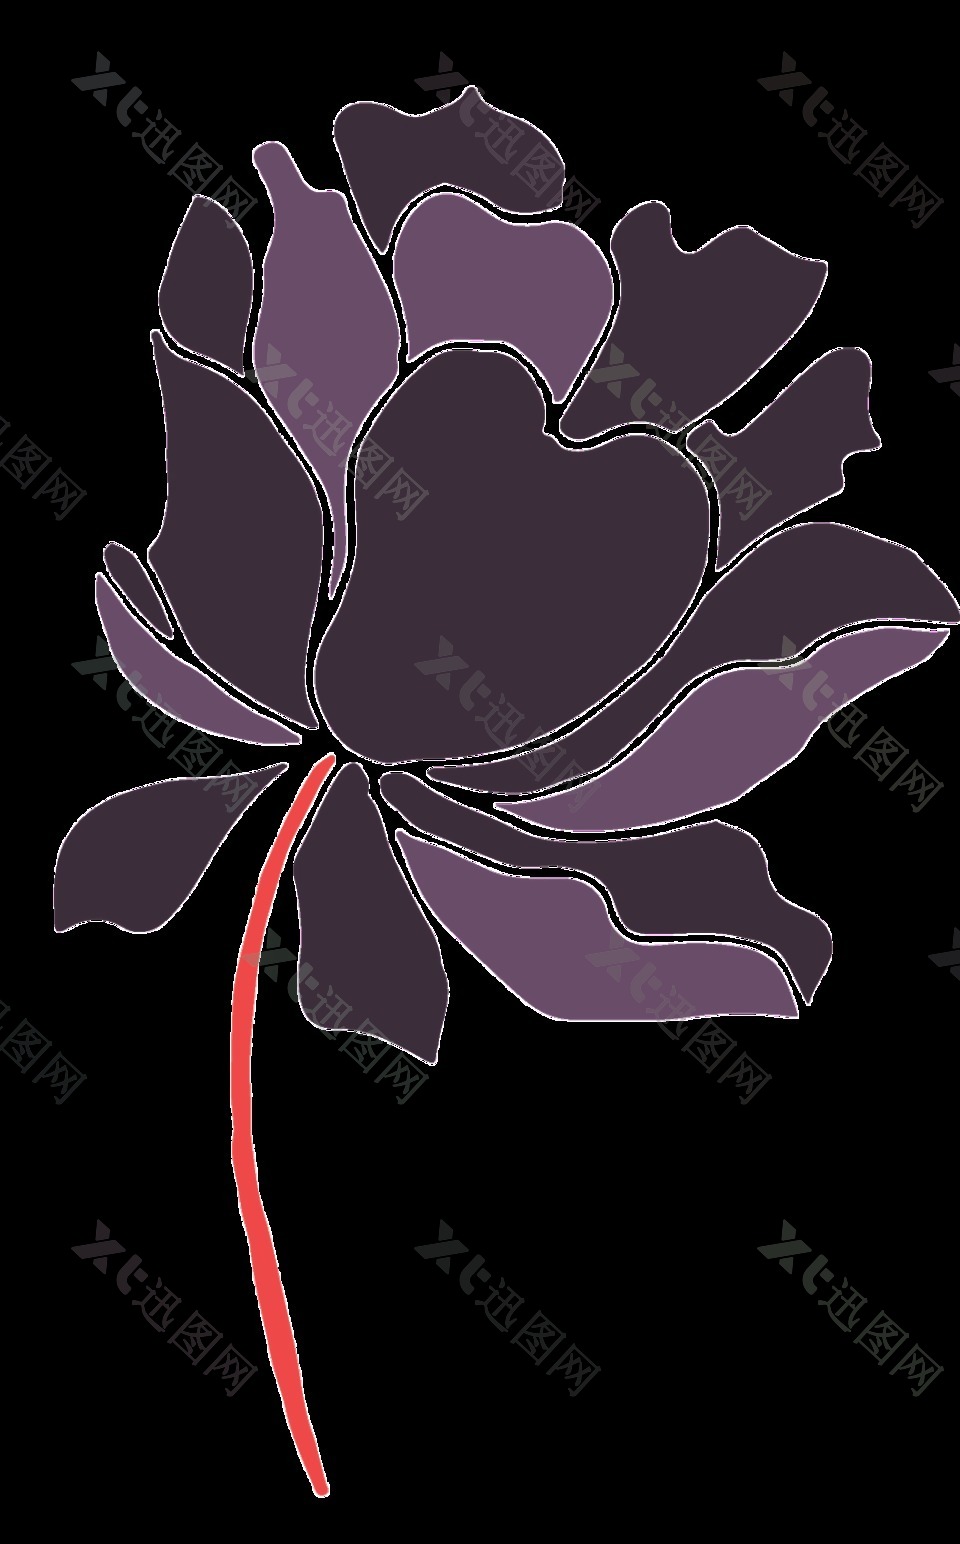 暗色系手绘花朵透明装饰素材